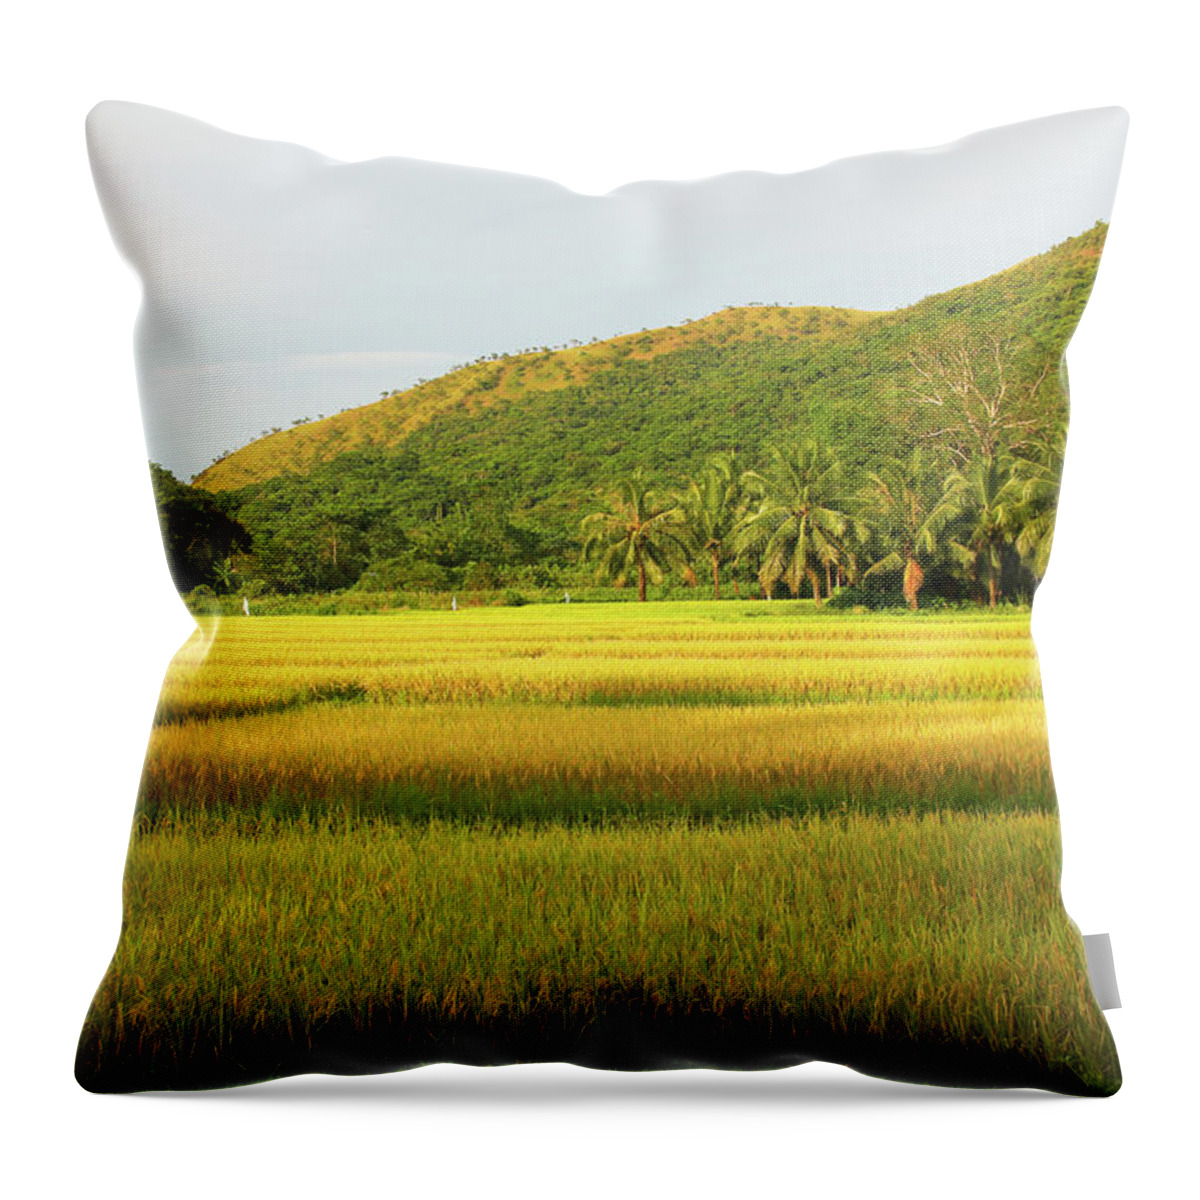 Grass Throw Pillow featuring the photograph Fields of Gold by Josu Ozkaritz